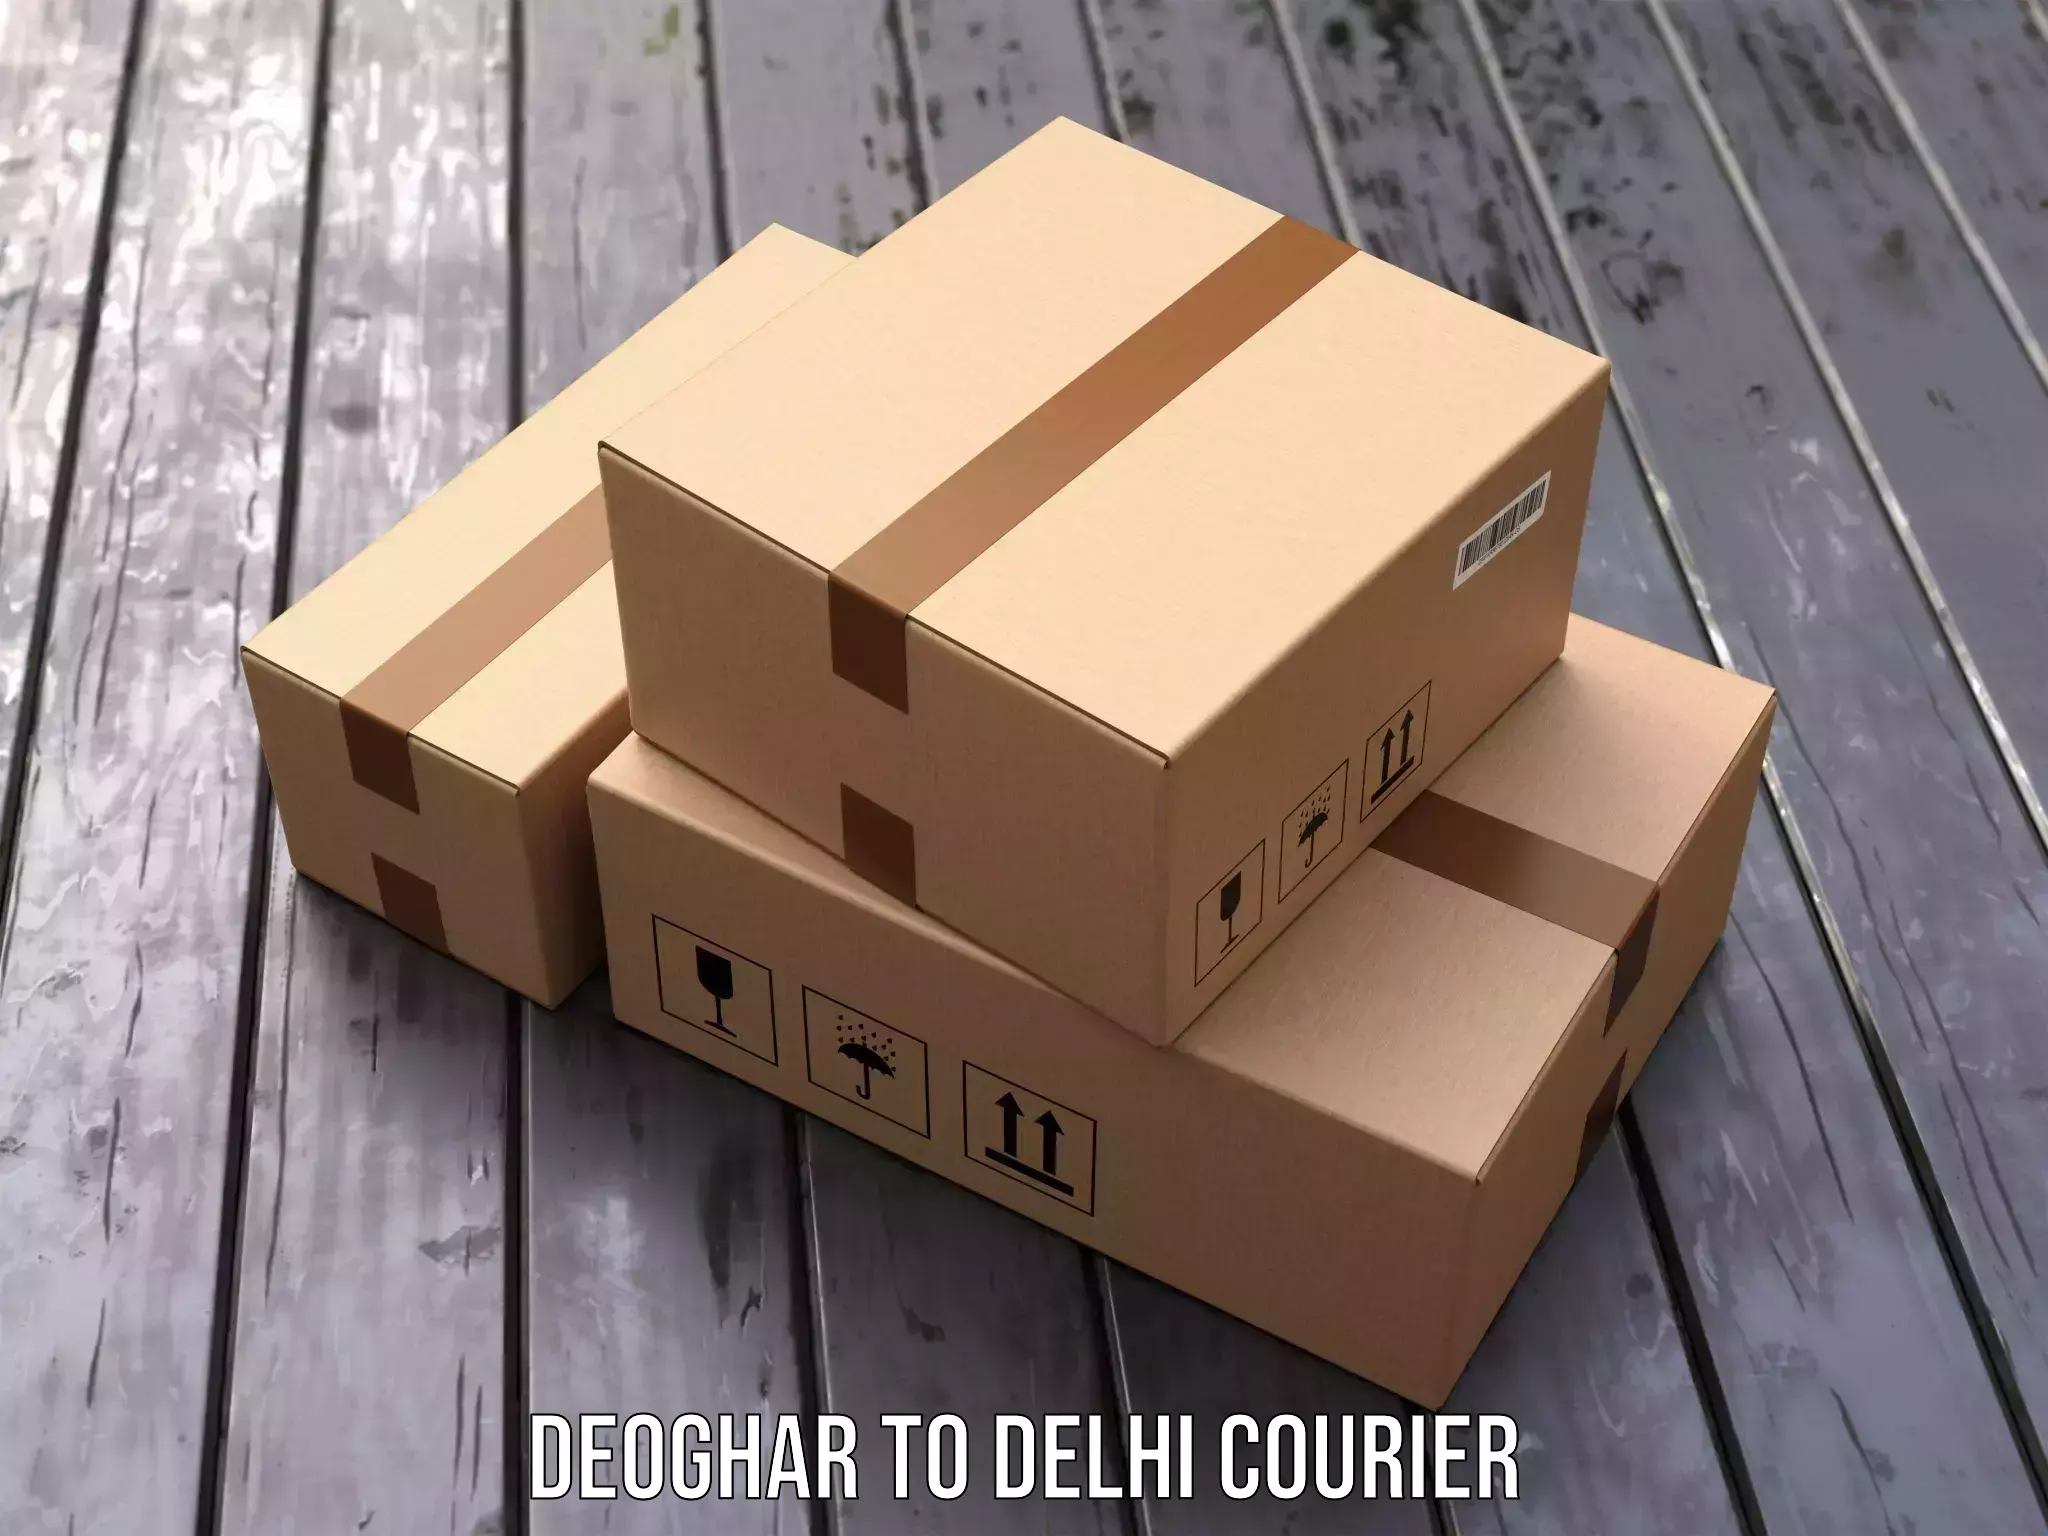 Delivery service partnership Deoghar to Jamia Hamdard New Delhi